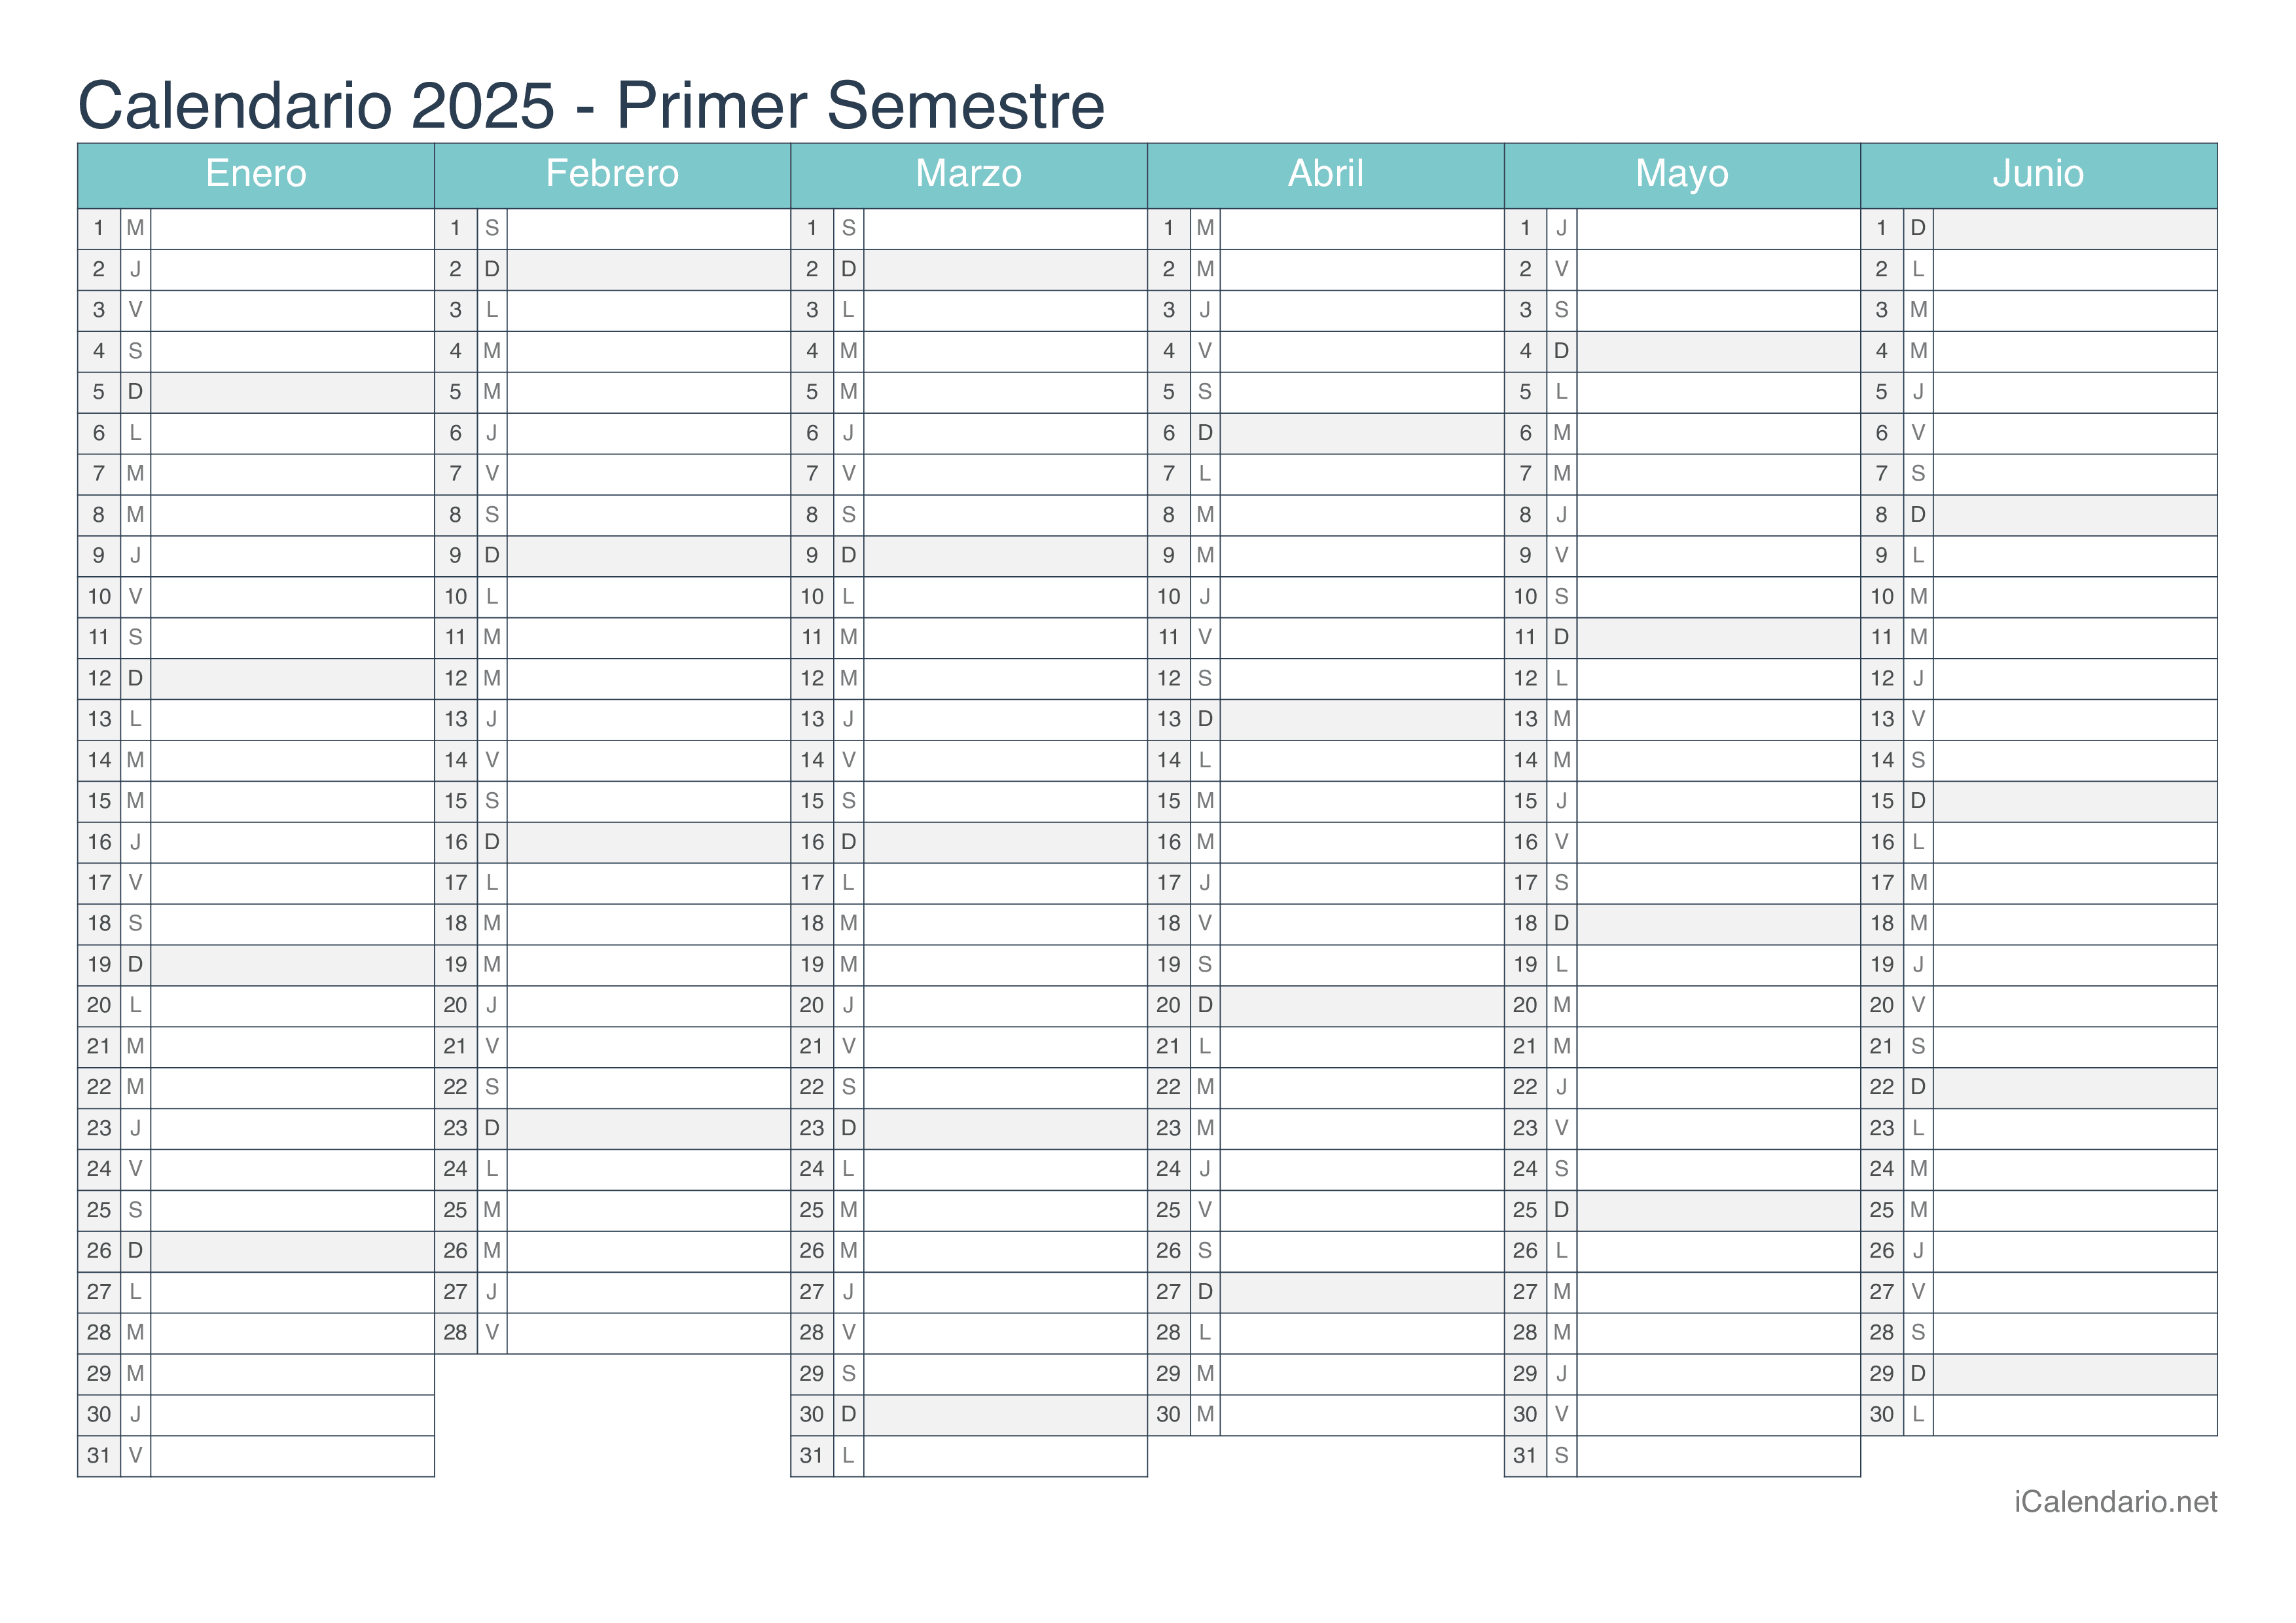 Calendario por semestre 2025 - Turquesa